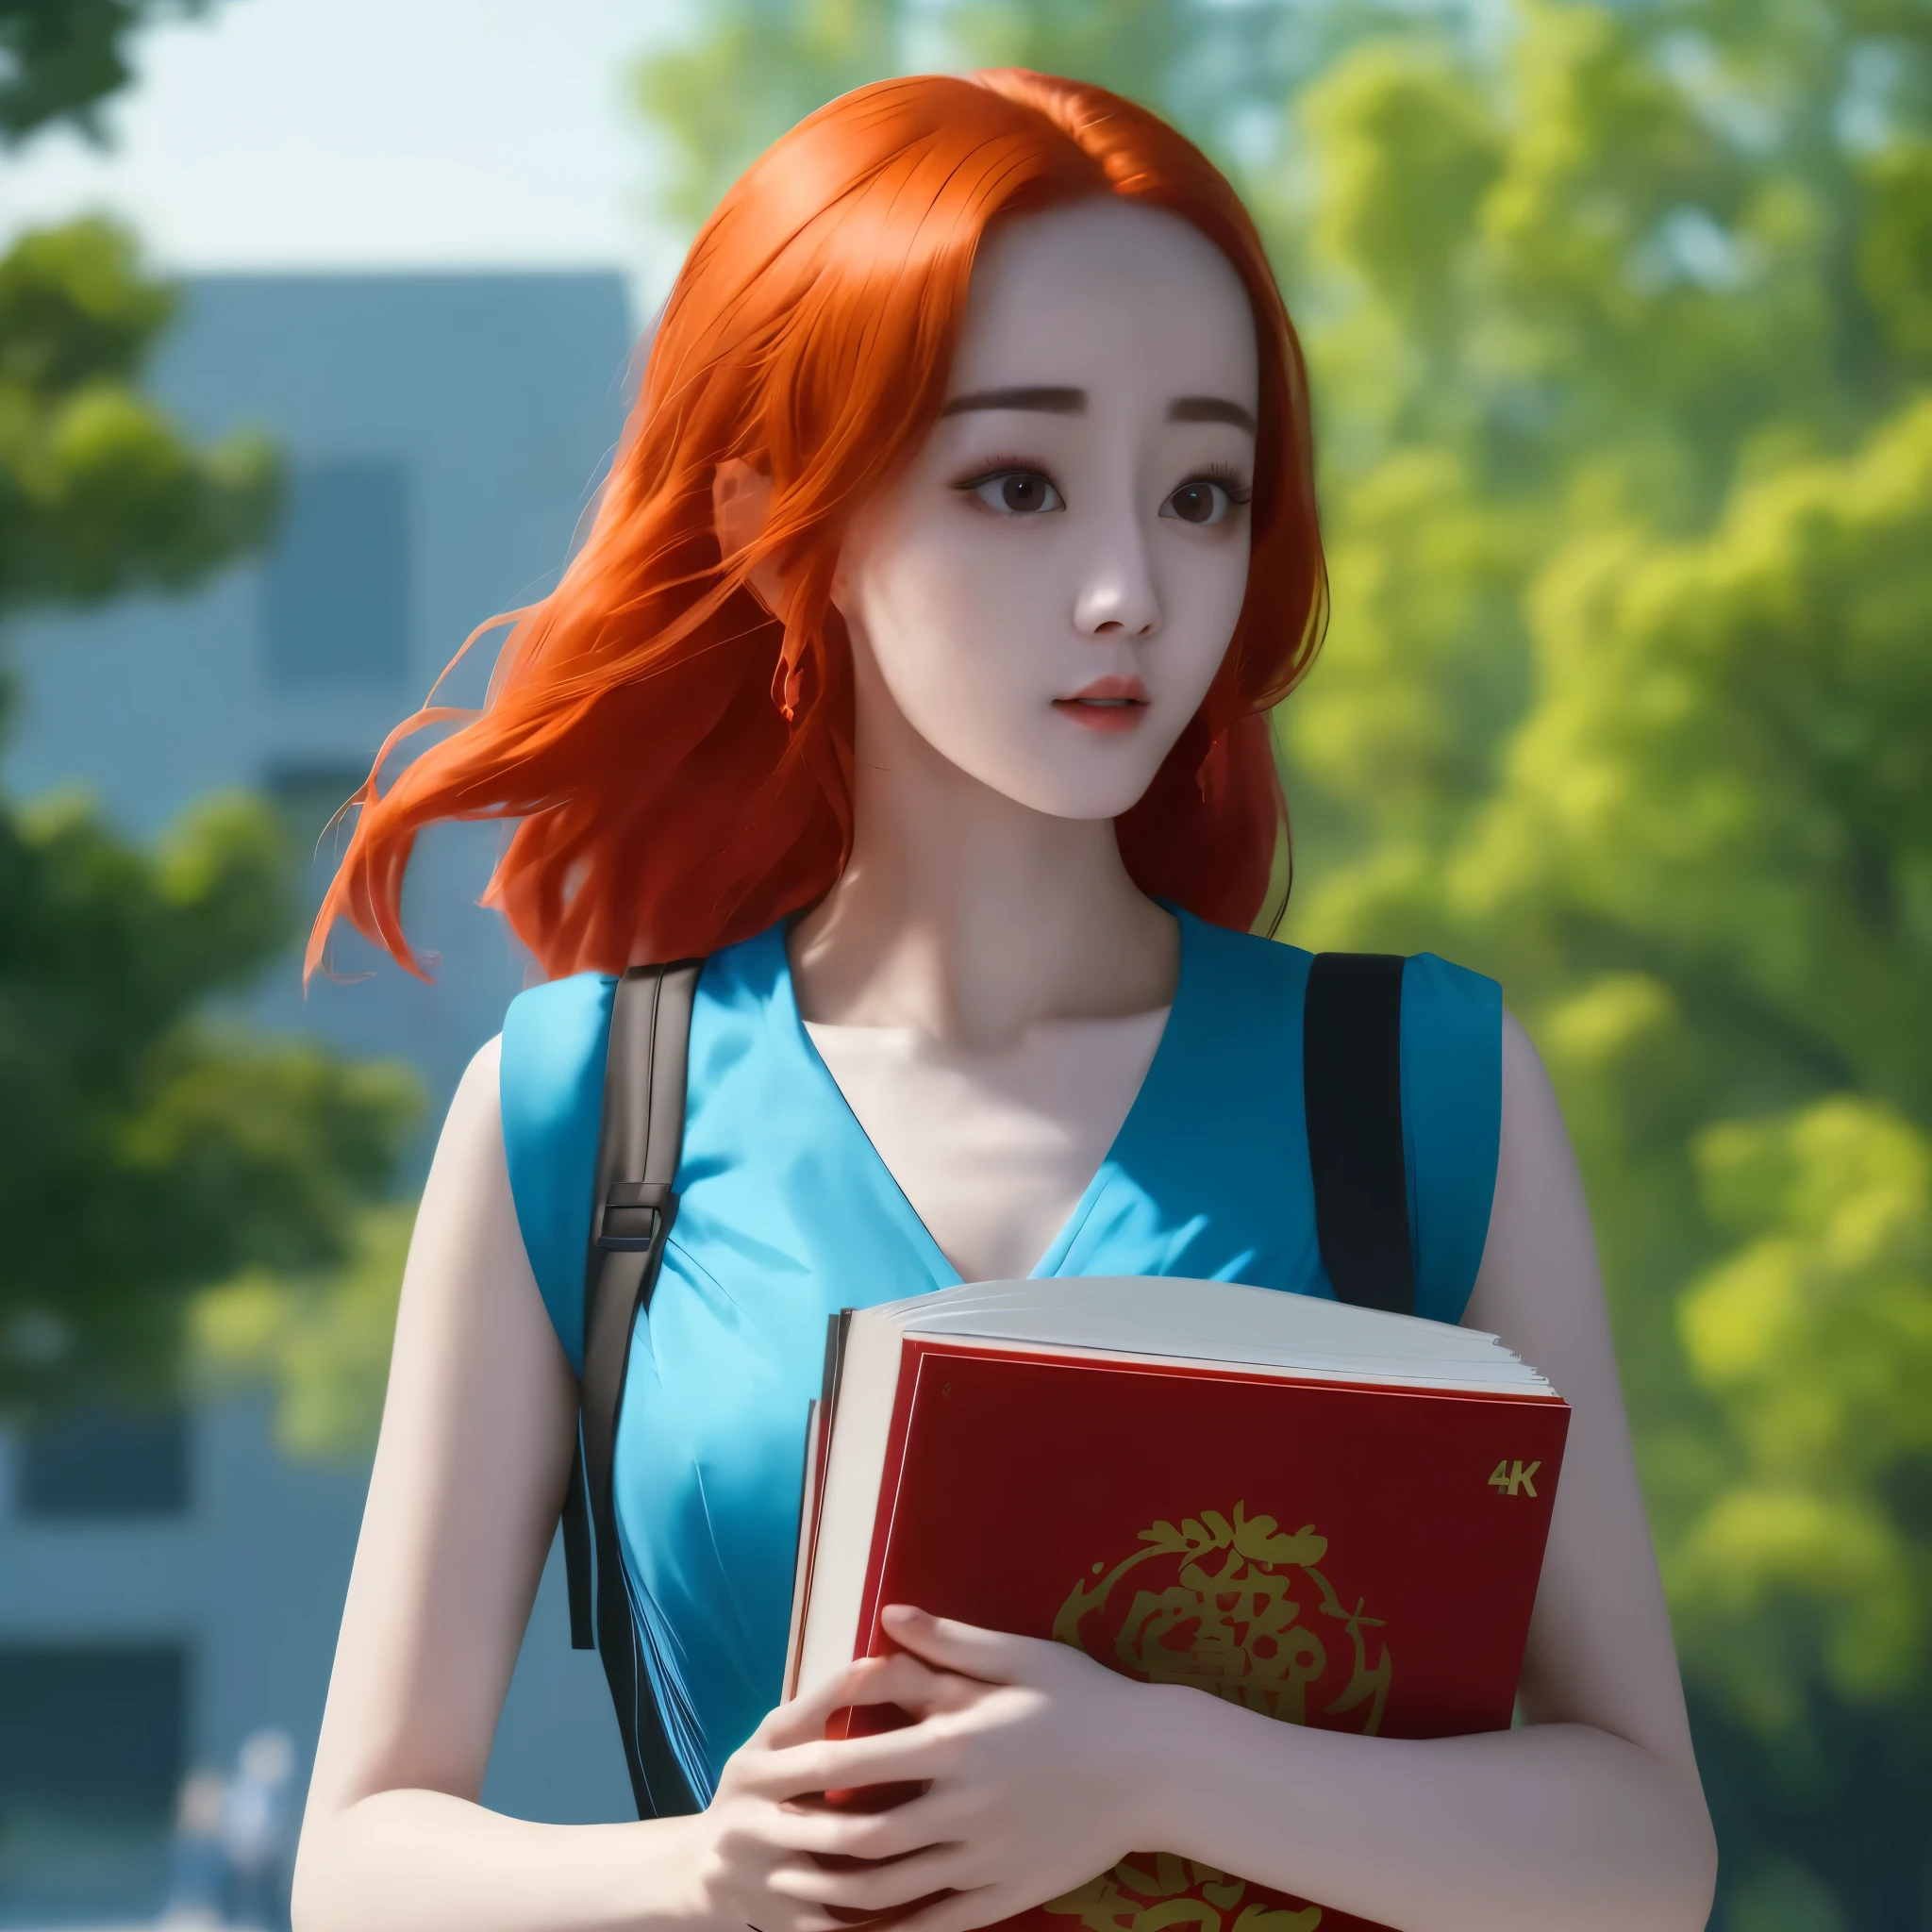 (最好的质量,4K,8千,高分辨率,杰作:1.2),极其详细, 红头发的中国大学生, 迪丽热巴, 走在校园里. 蓝色太阳裙, 携带书籍 HDR, 8千, 荒诞, 电影 800, 清晰聚焦